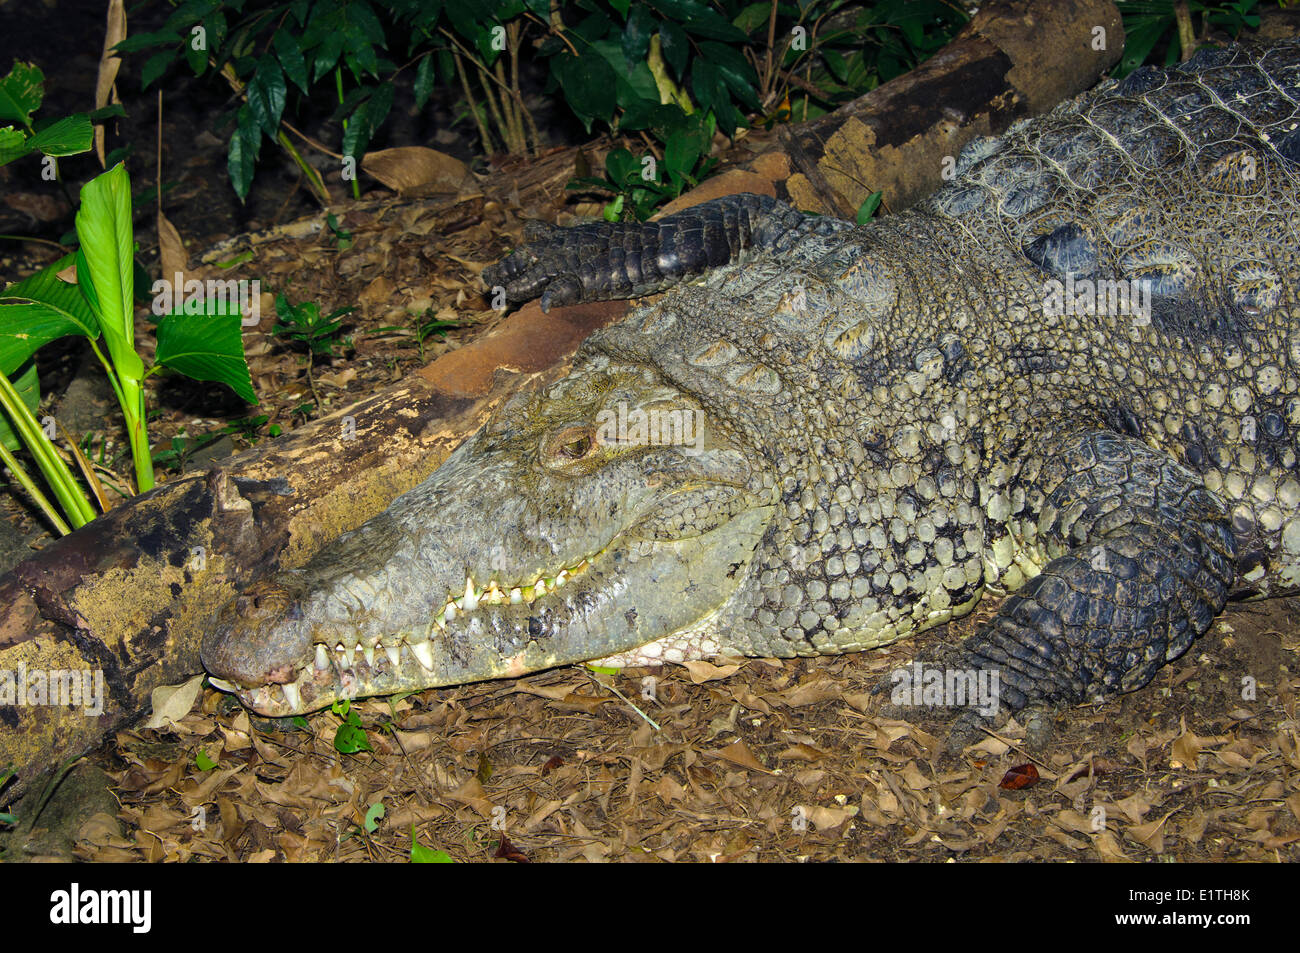 El Cocodrilo Americano (Crocodylus acutus) regodearse, Belice, Centroamérica Foto de stock